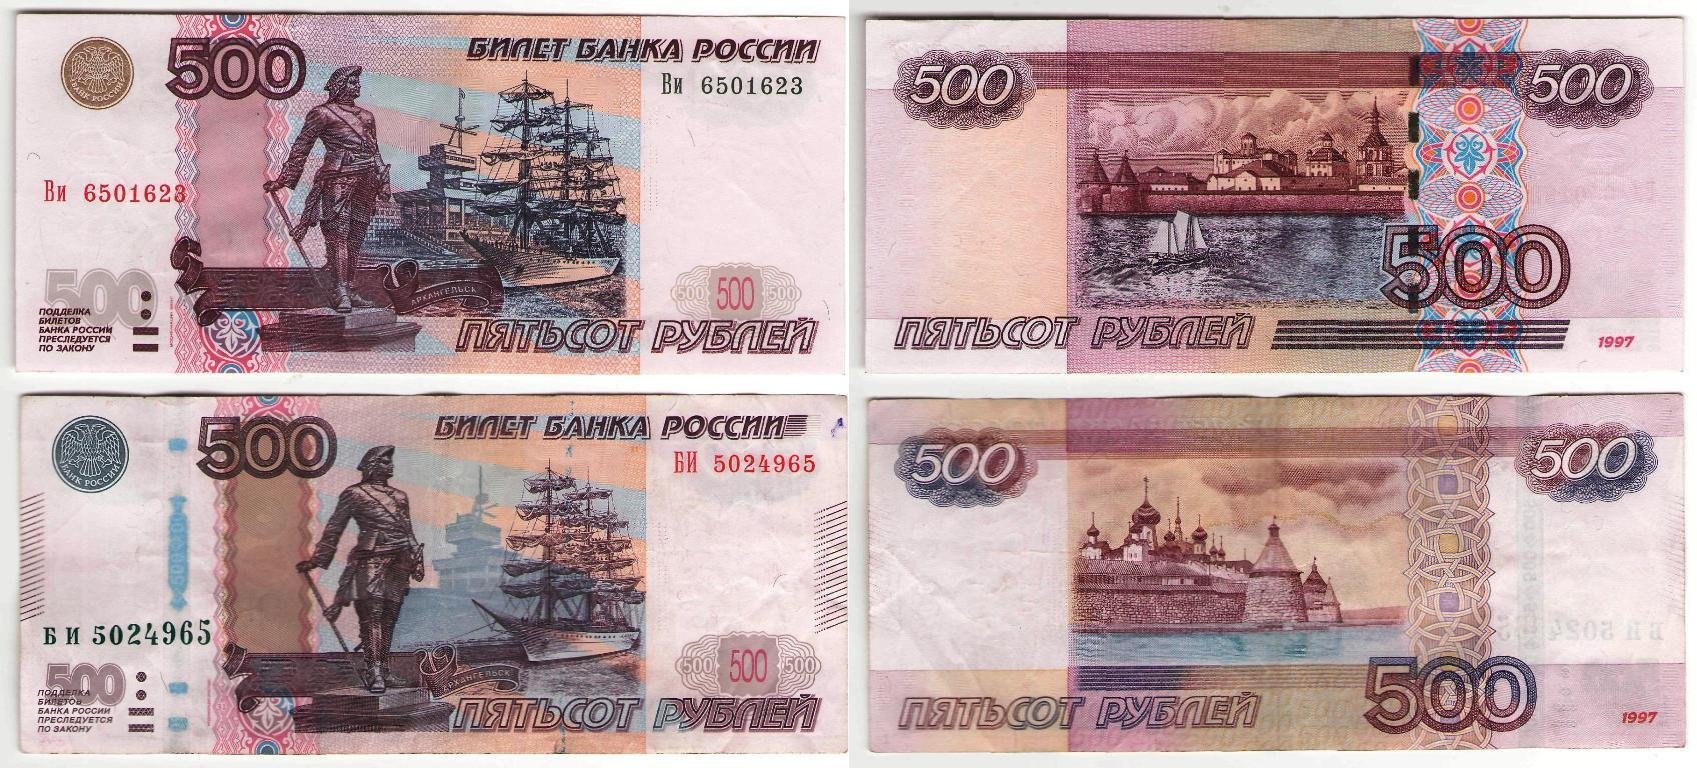 Деньги 500 рублей. Купюра 500 рублей 1997. 500 Рублей. Деньги печатать. Купюра 500 рублей старого образца.